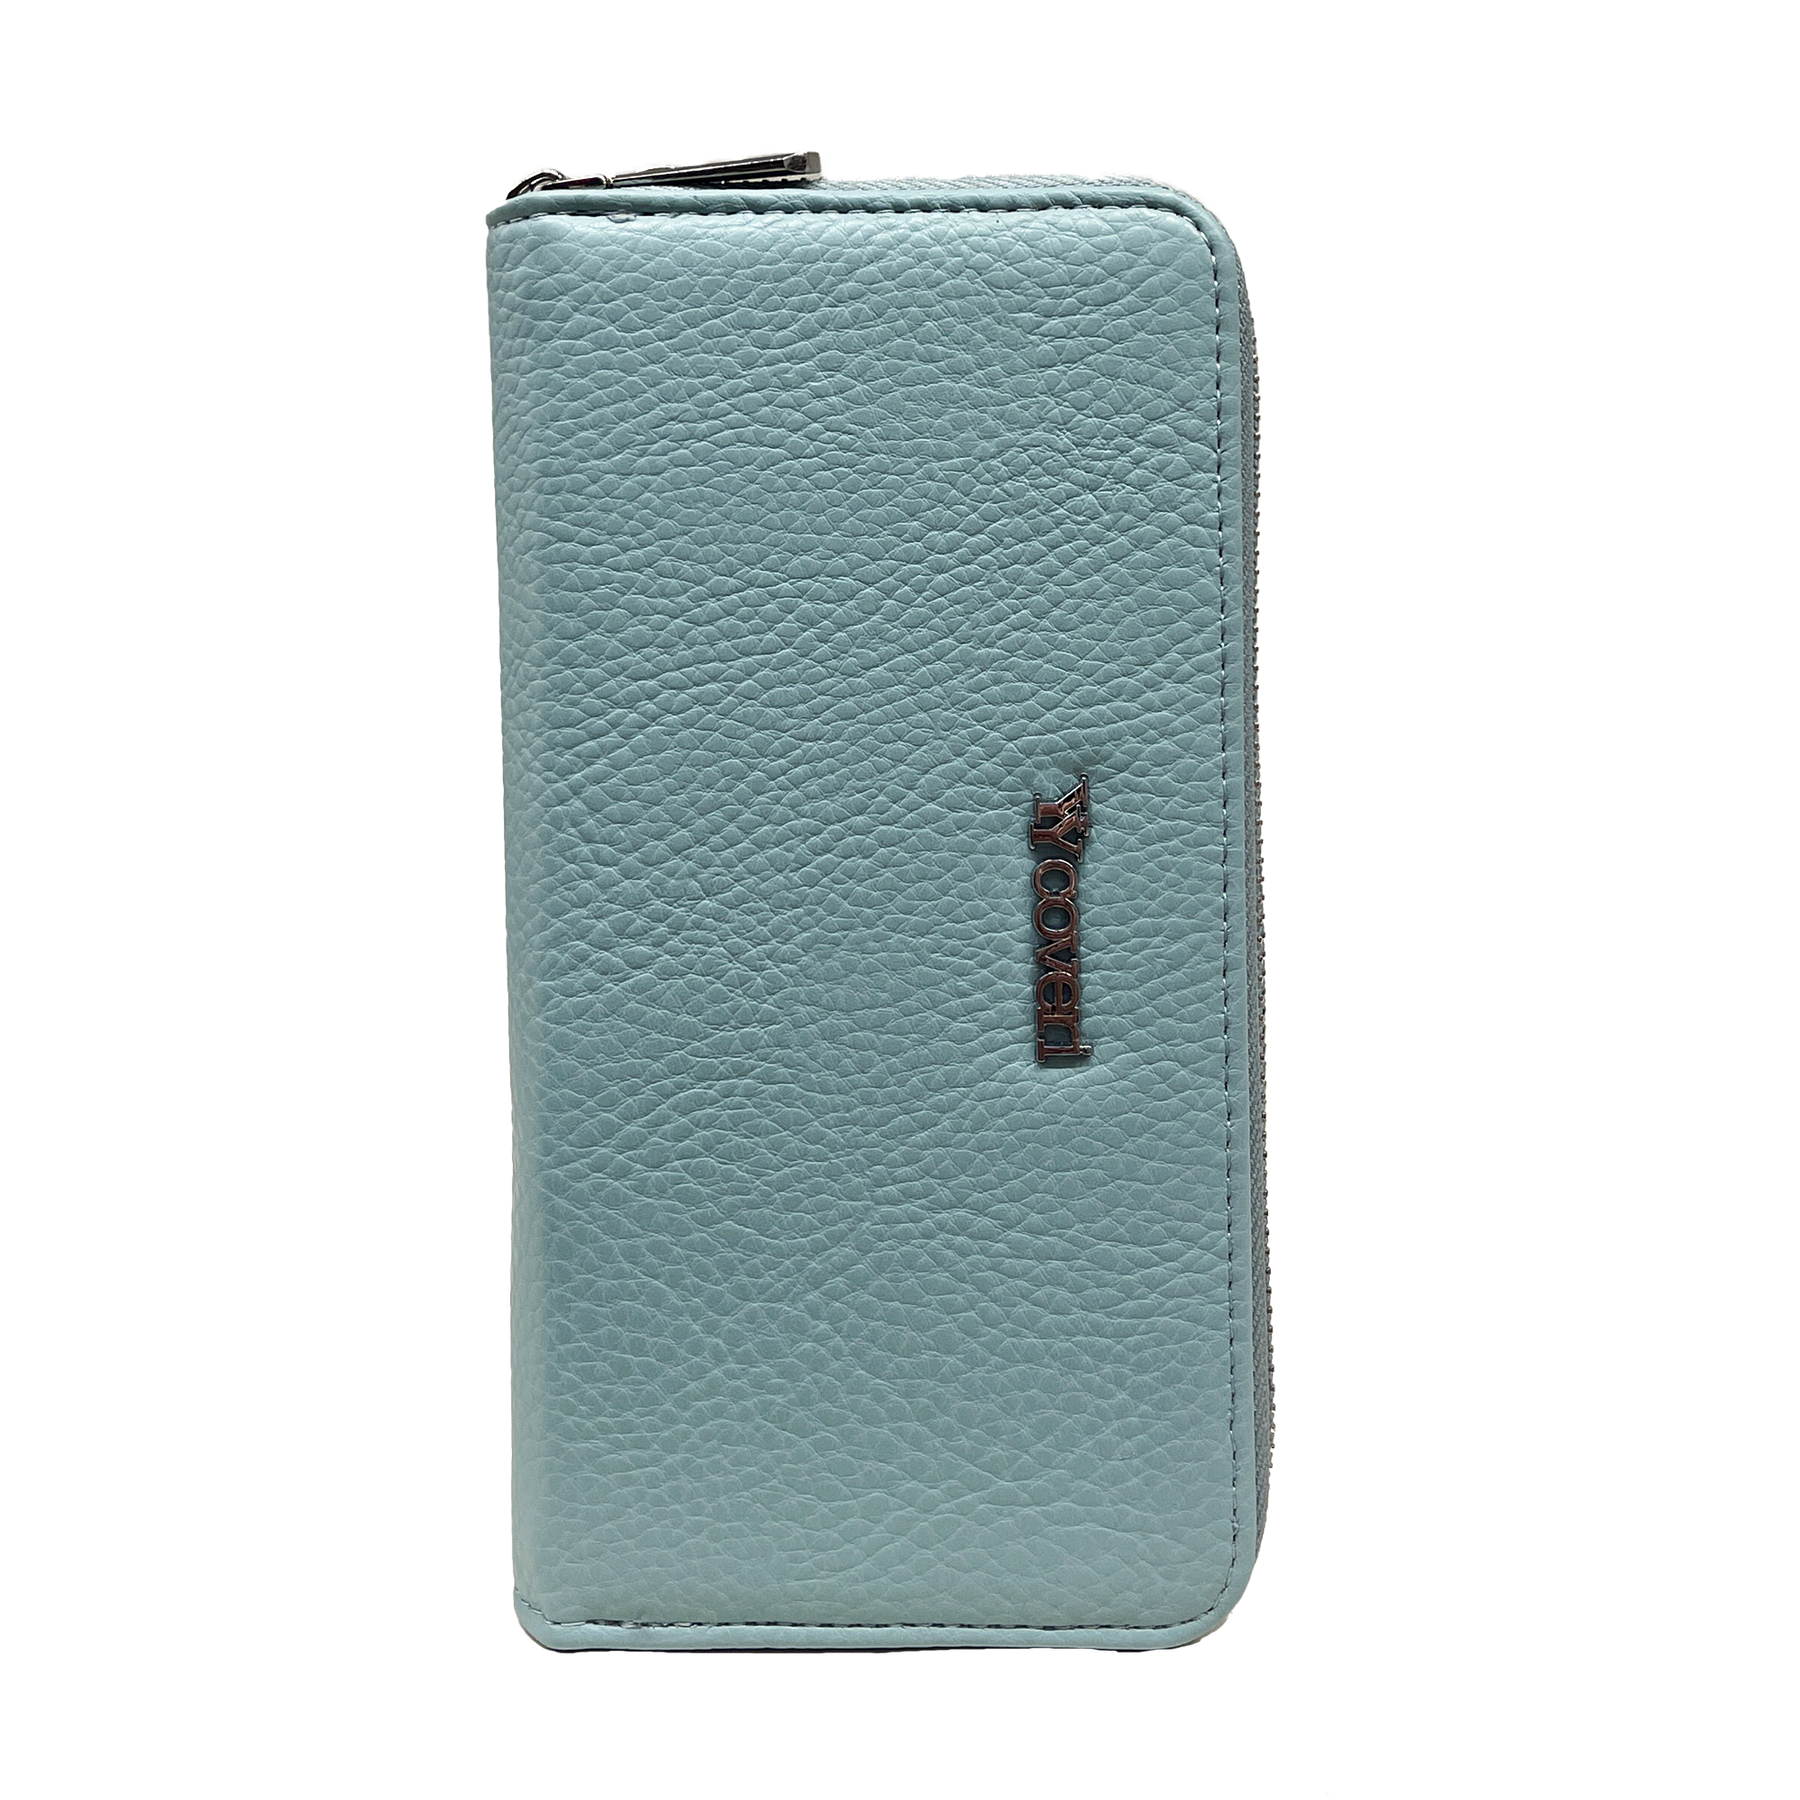 You yuang Coveri Premium Blå Plånbok med Flera Fack - Säker och Stilig